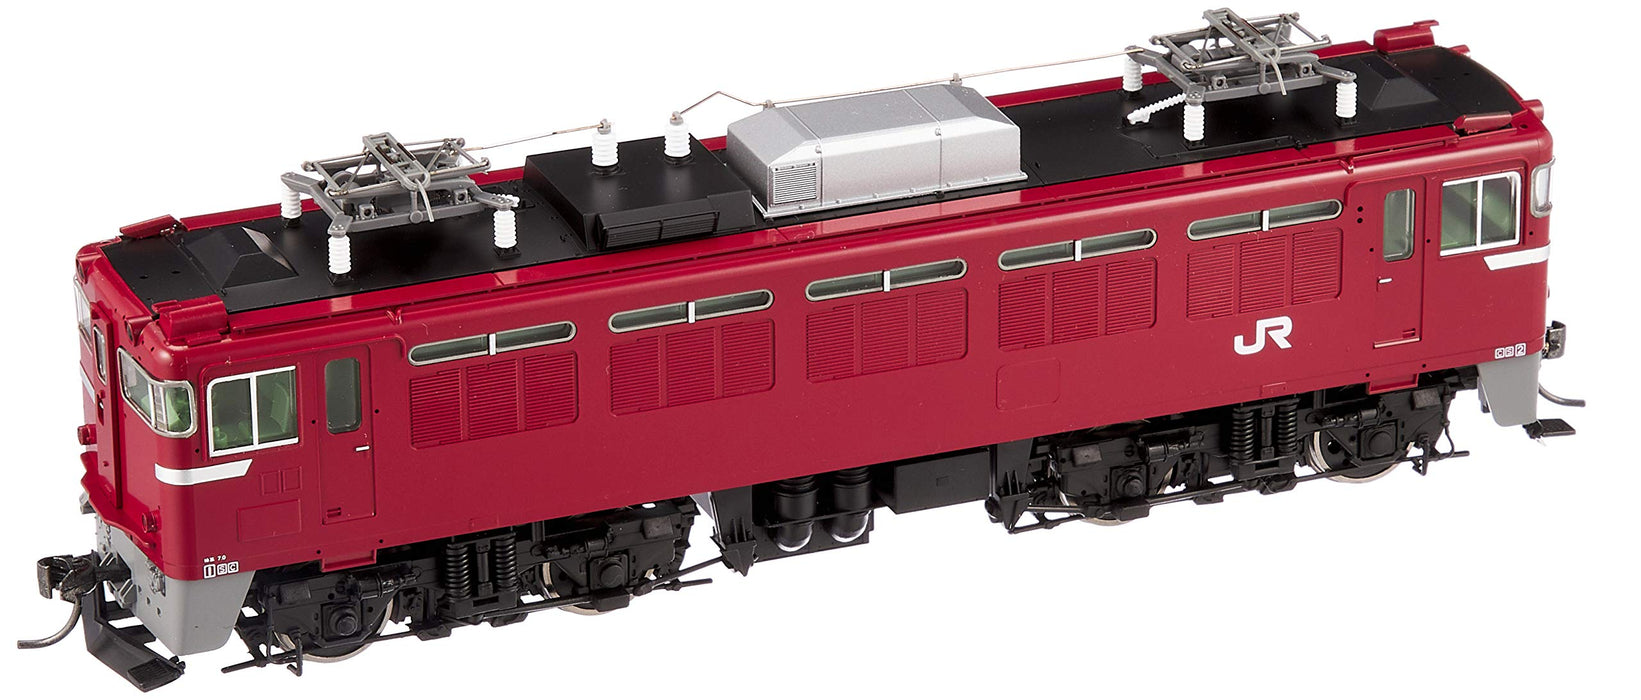 Locomotive électrique grise Tomytec Tomix Ho Gauge modèle ED79-0 - Chemin de fer HO-2014